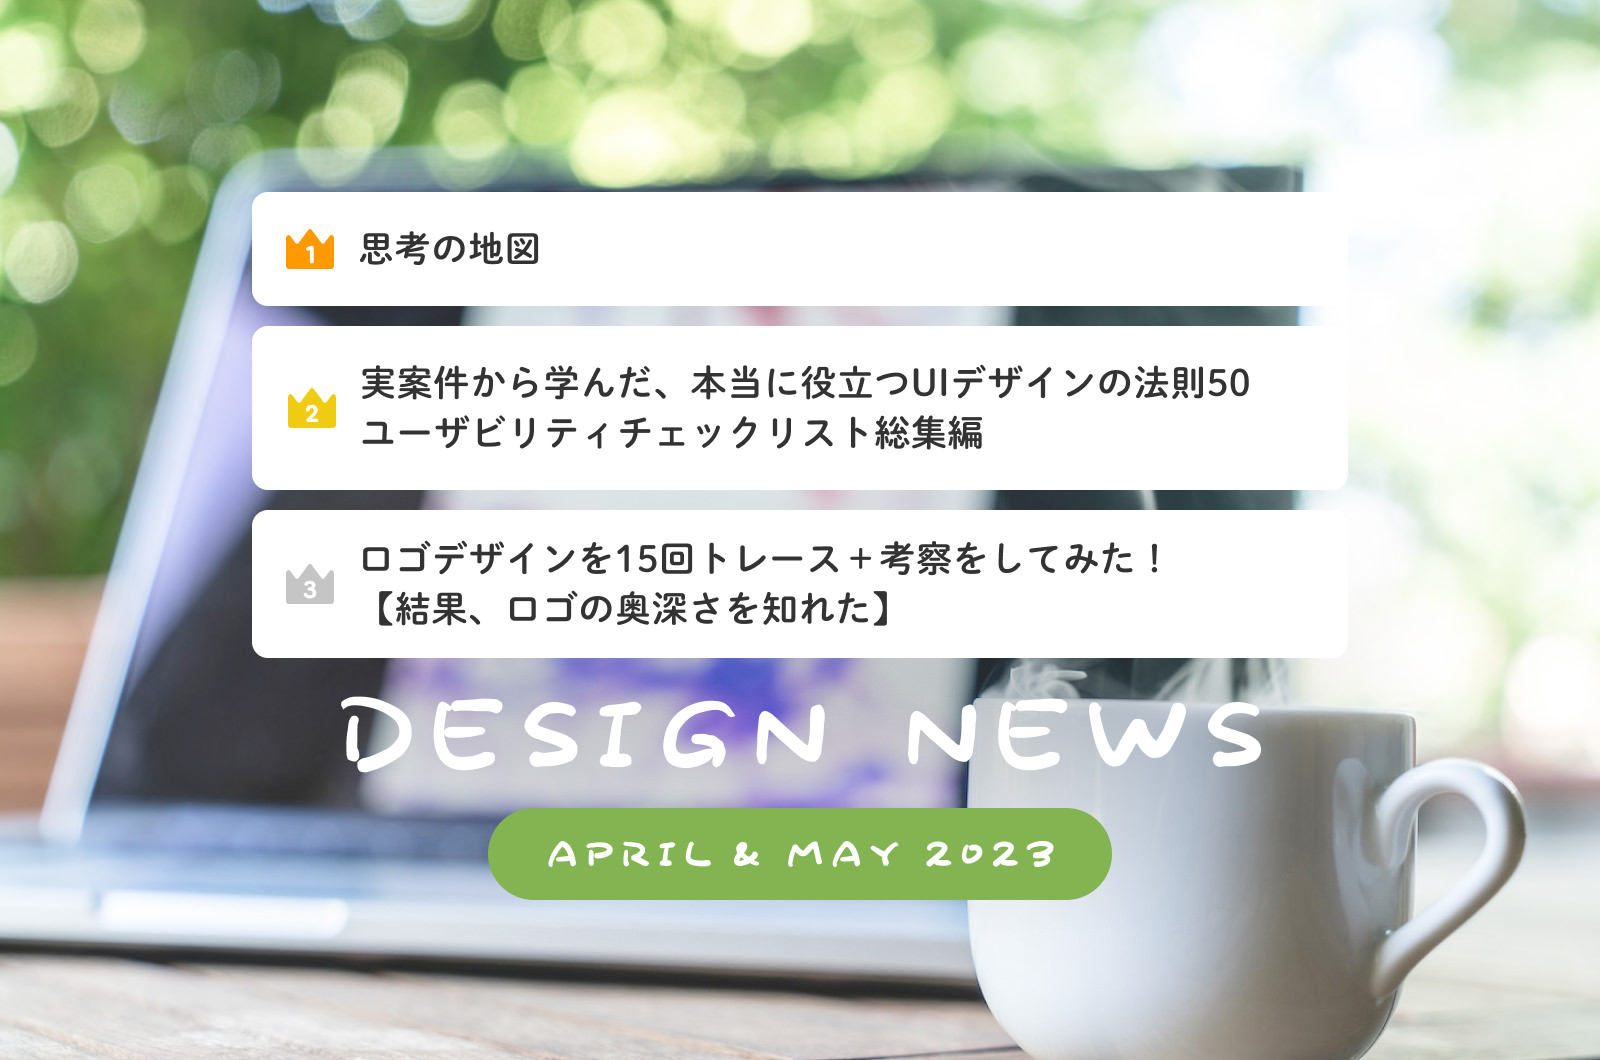 Design News (April & May 2023)